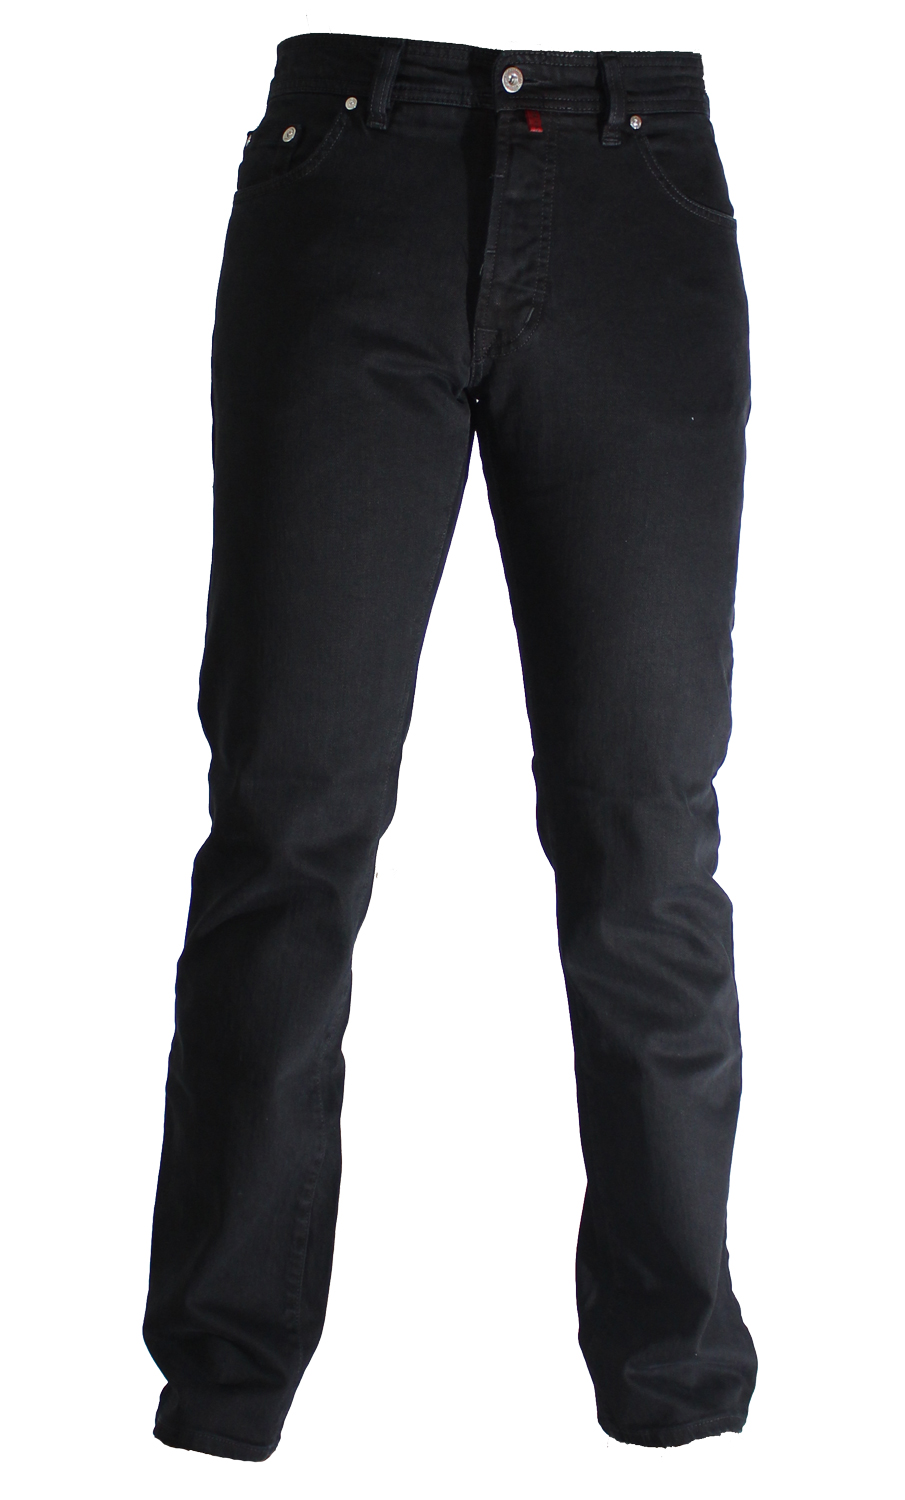 PIERRE CARDIN DEAUVILLE black star 3196 120.05 - Jeans-Manufaktur ...